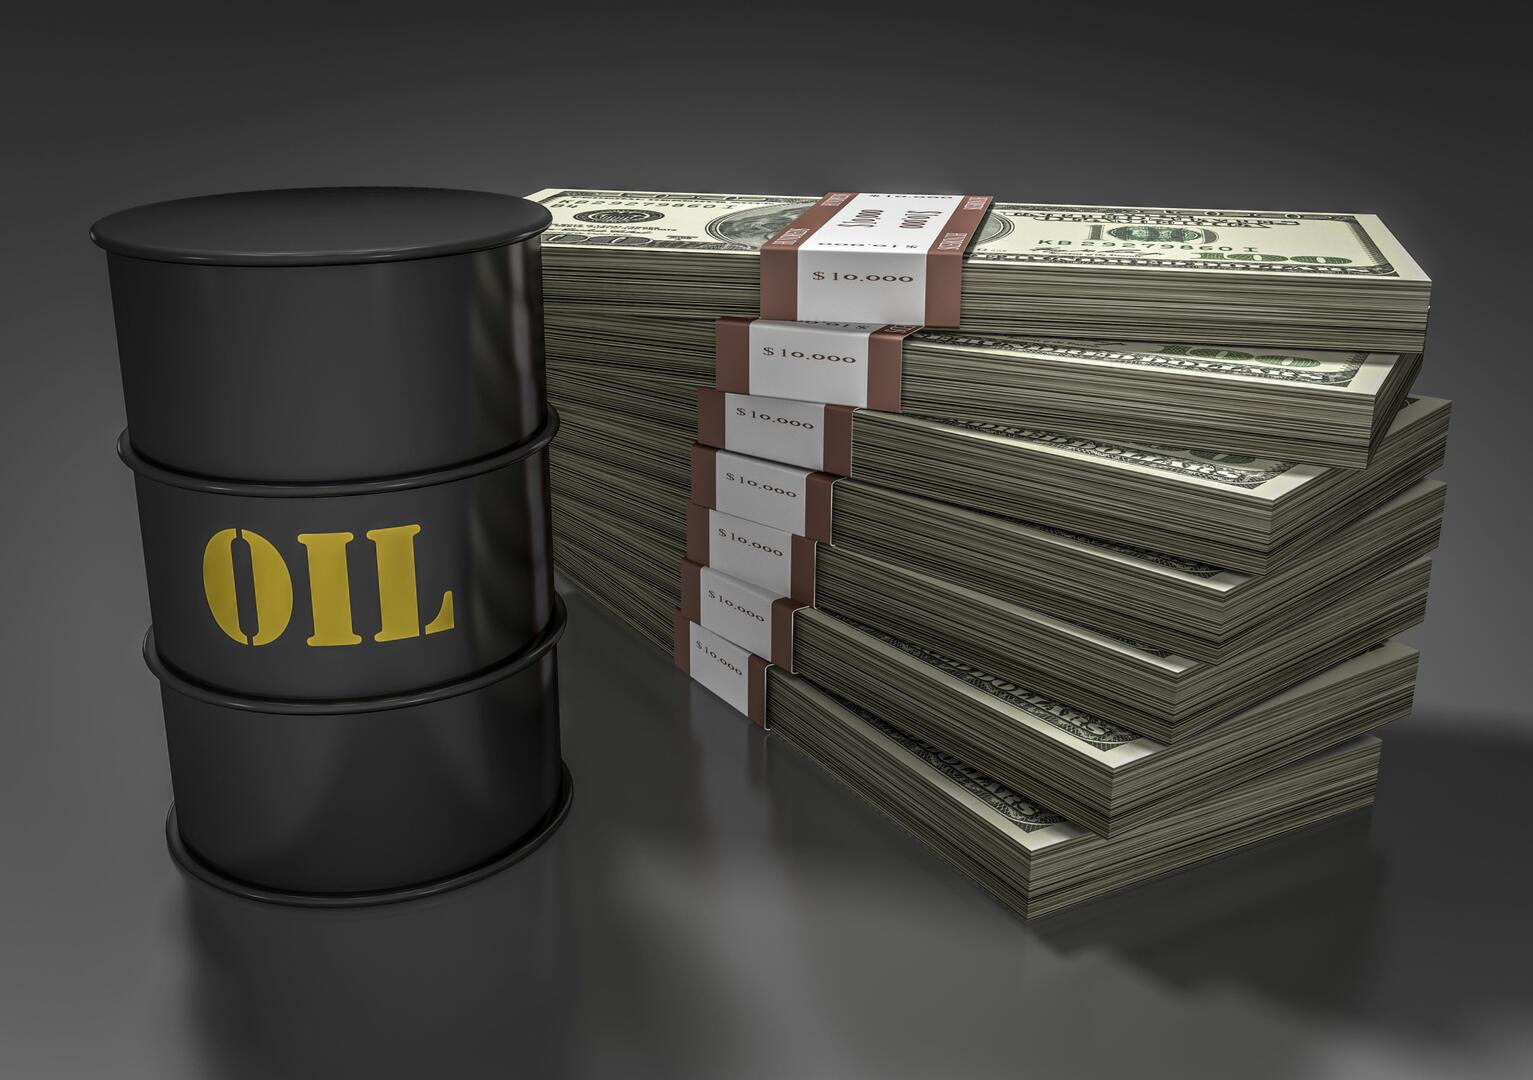 أسعار النفط تواصل الانخفاض